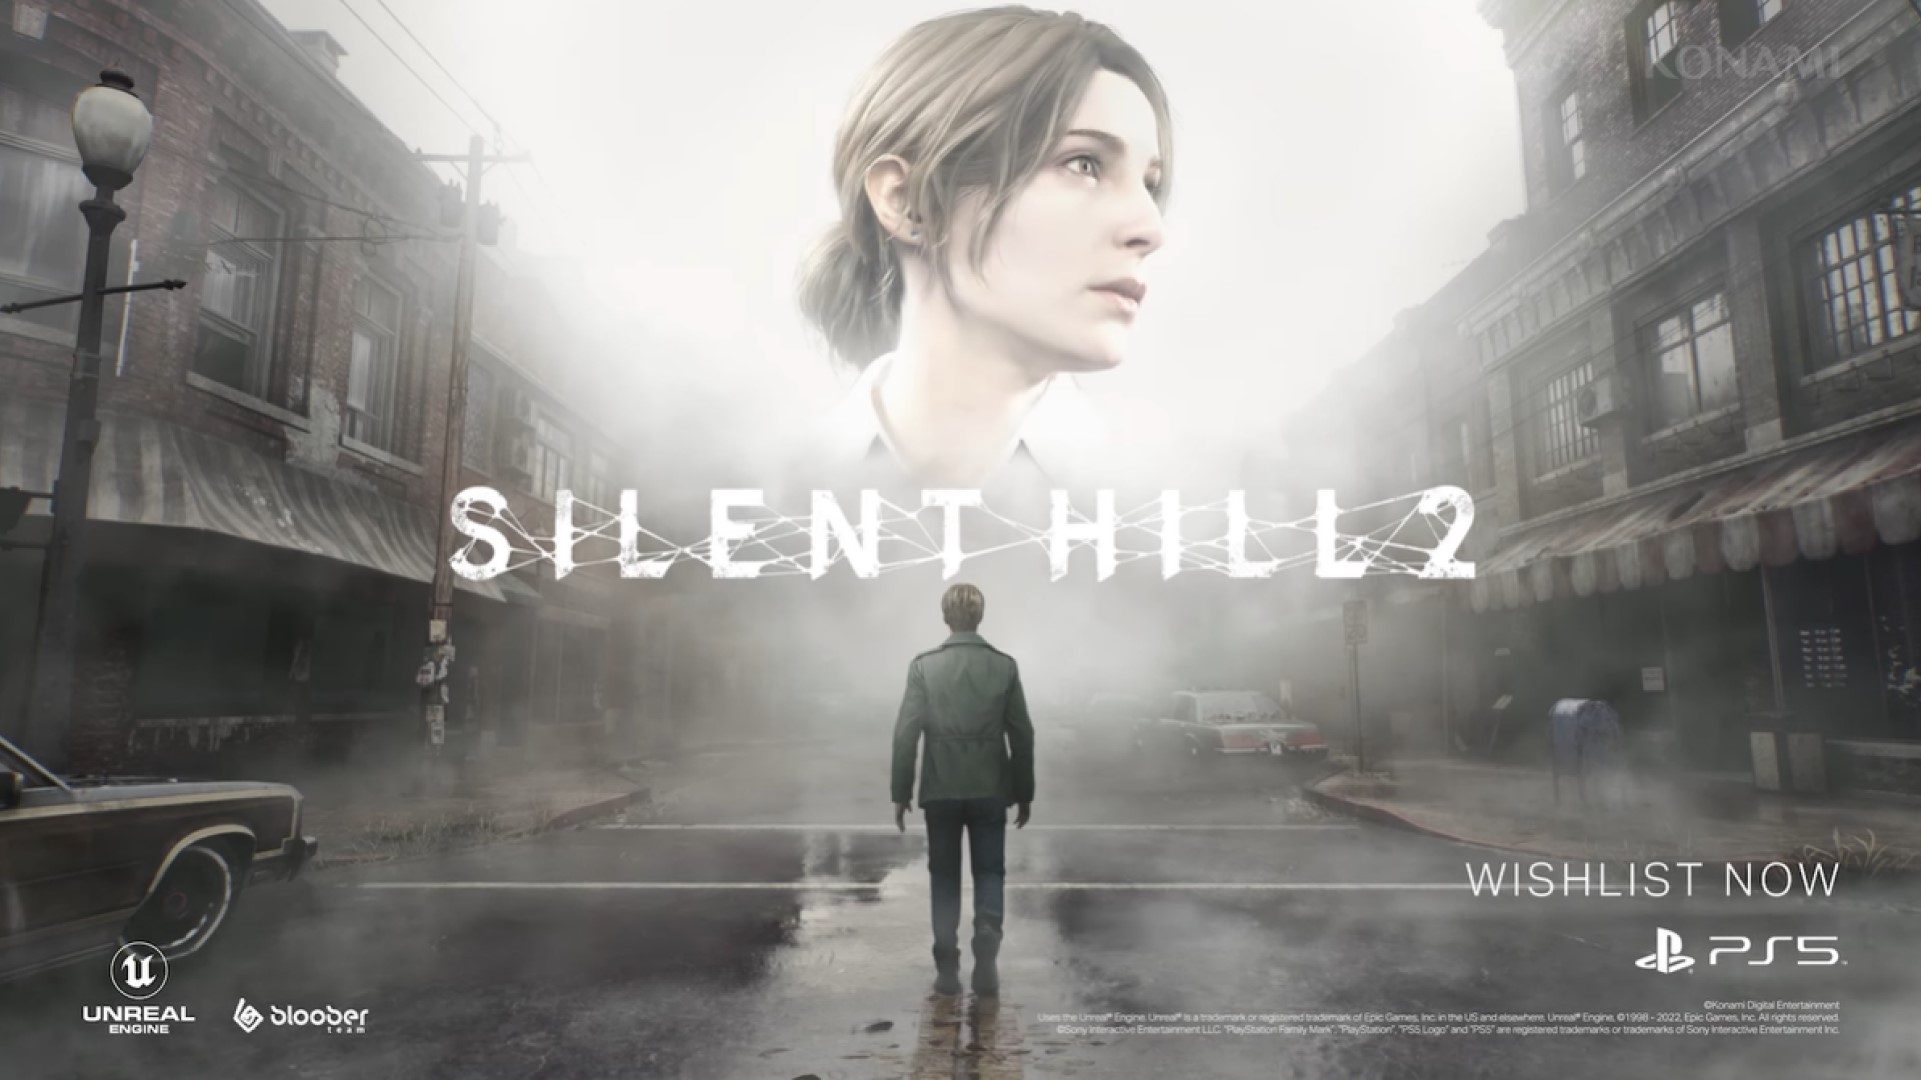 Gerücht: Silent Hill 2-Remake könnte bei PlayStation-Event im Mai gezeigt werden